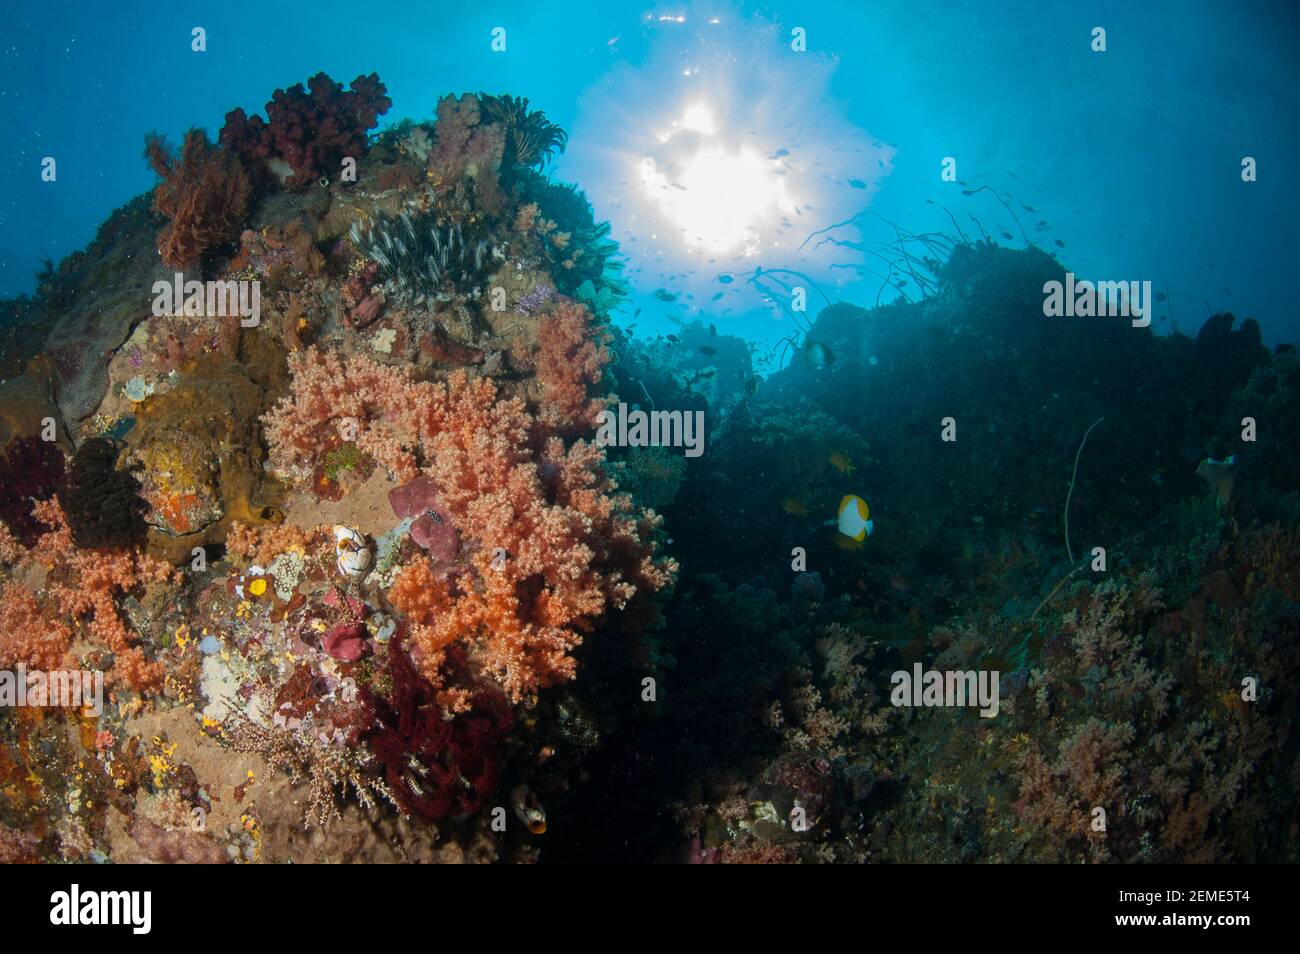 Koralle, Anthozoa Klasse, Wand mit Sonne im Hintergrund, Dante's Wall Tauchplatz, Lembeh Straits, Sulawesi, Indonesien Stockfoto